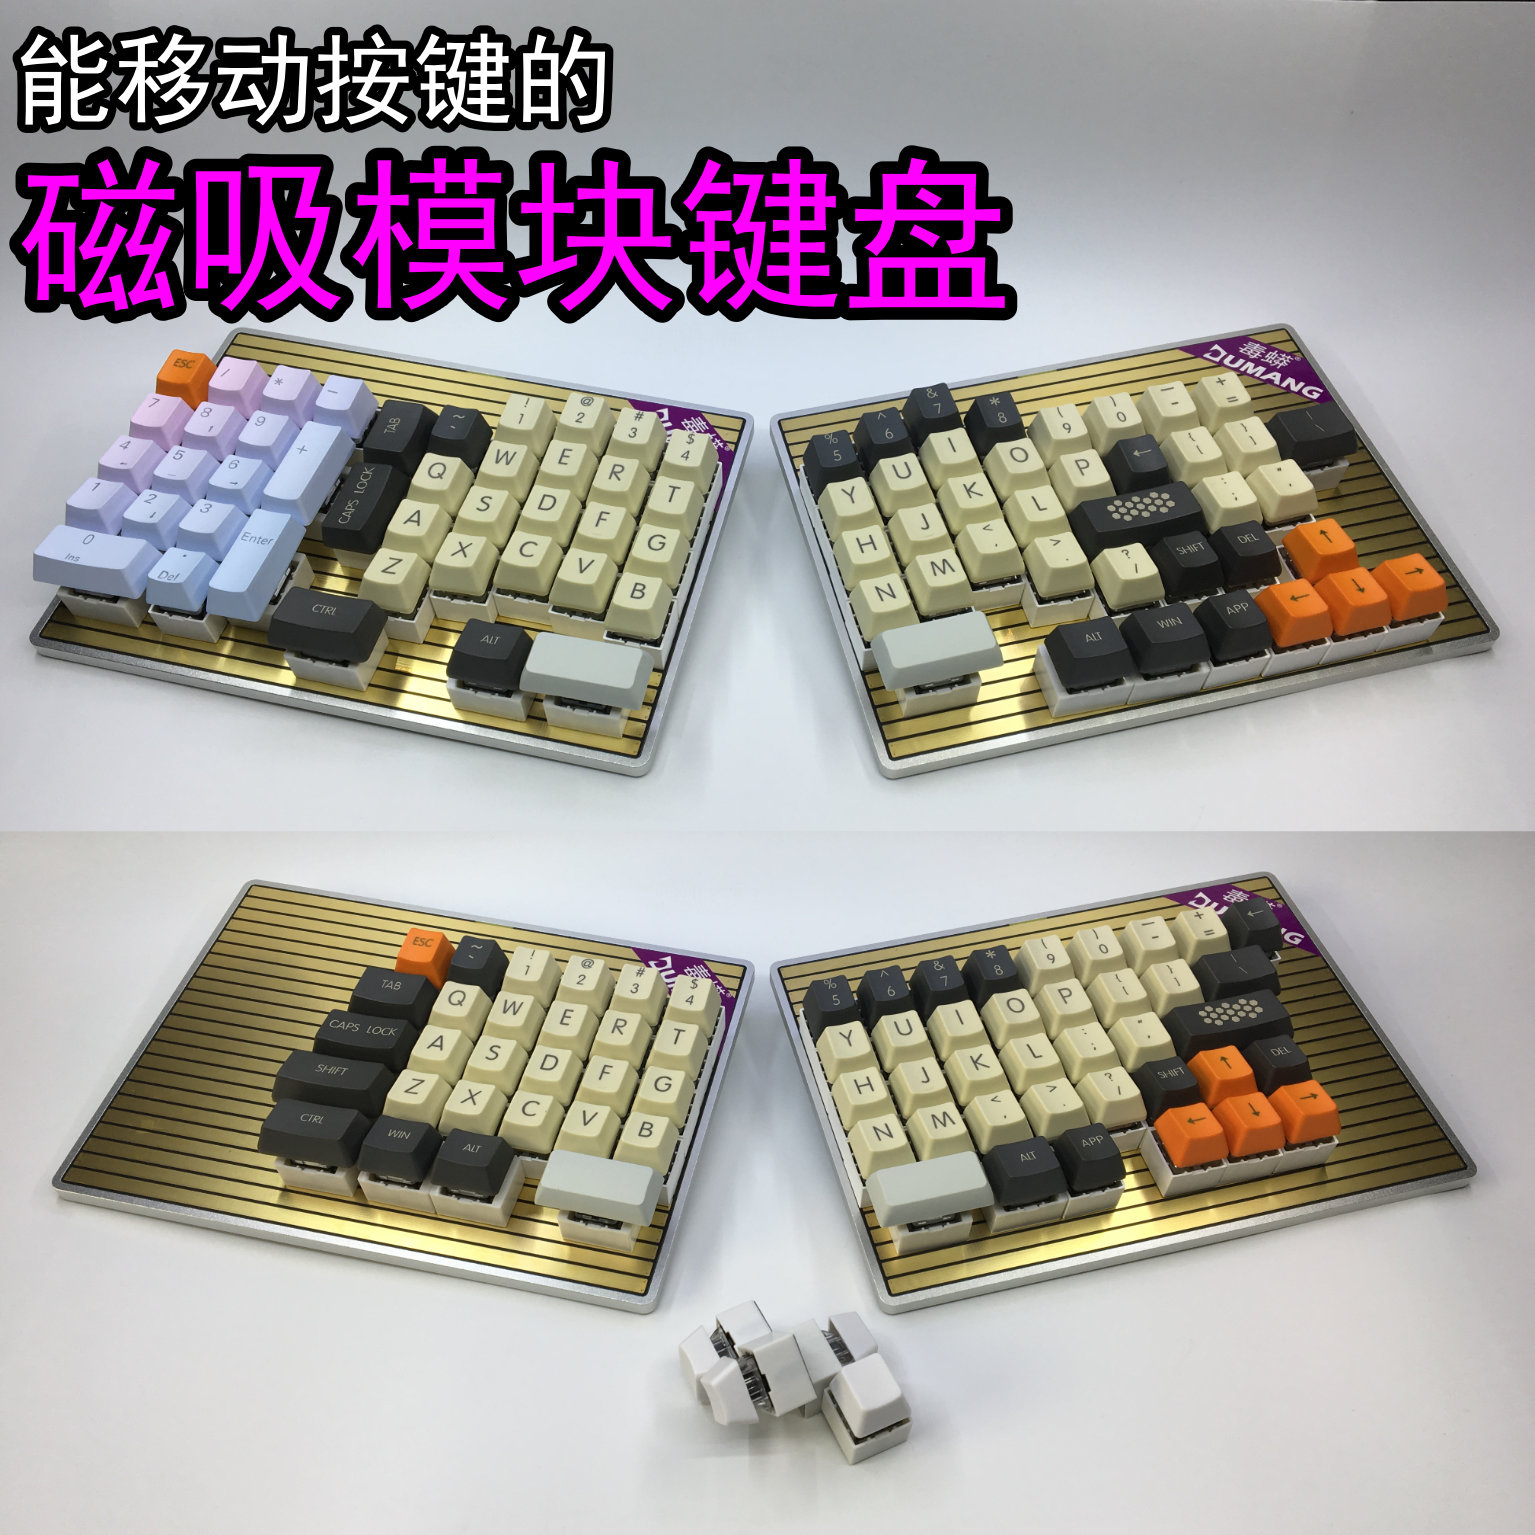 DUMANG毒蟒键盘DK6机械键盘可移动磁吸按键模块化自定义模块键盘